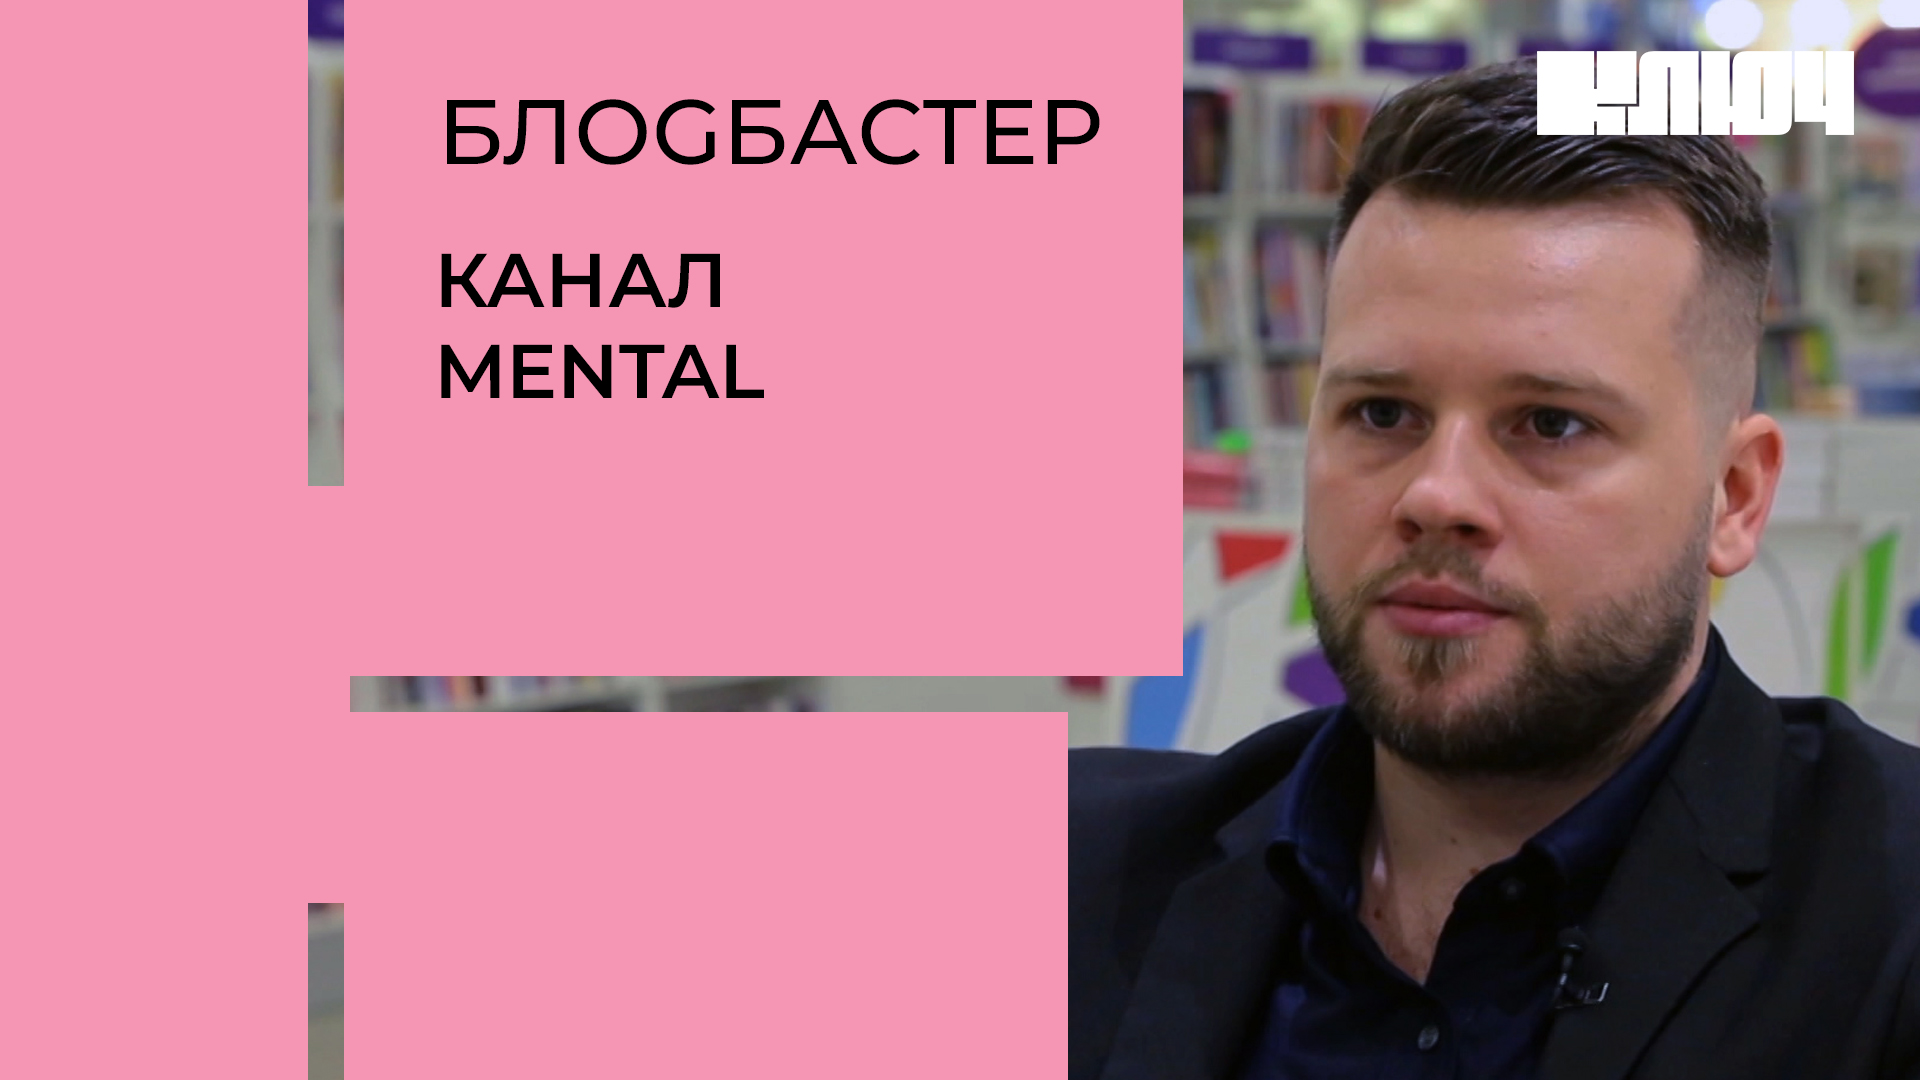 Как научиться читать людей – блогер Сергей Бубович о создании своего канала MENTAL| Блоgбастер